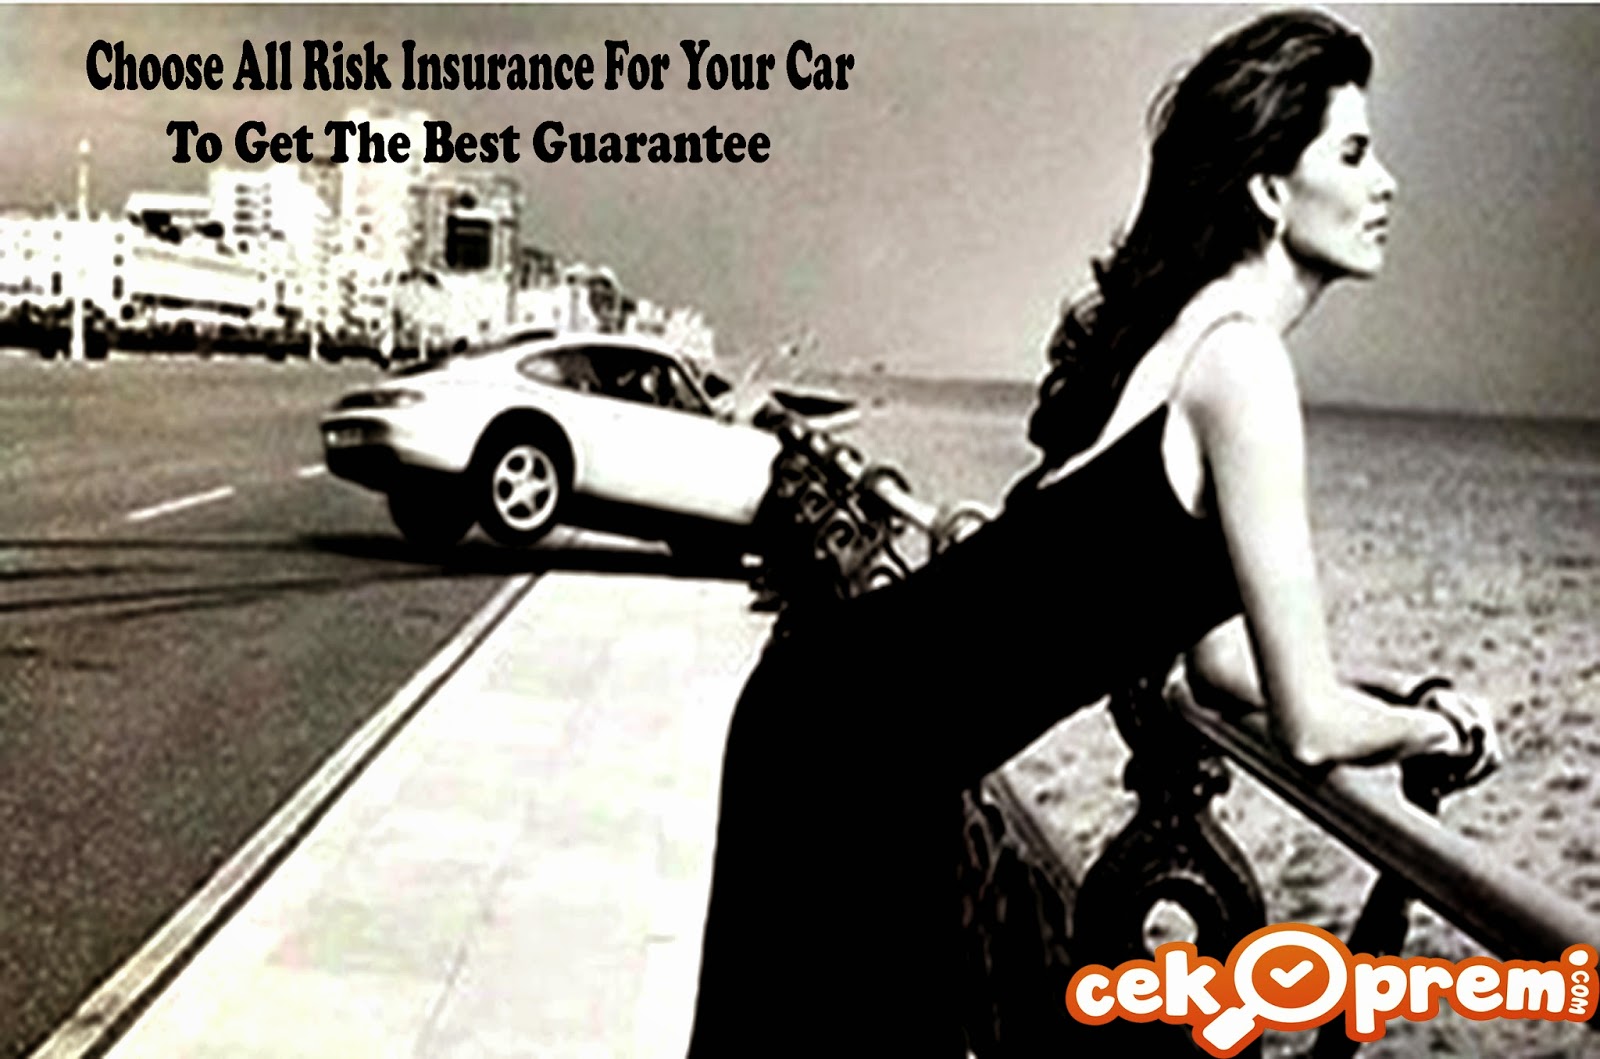 asuransi-mobil-all-risk-cekpremi.jpg